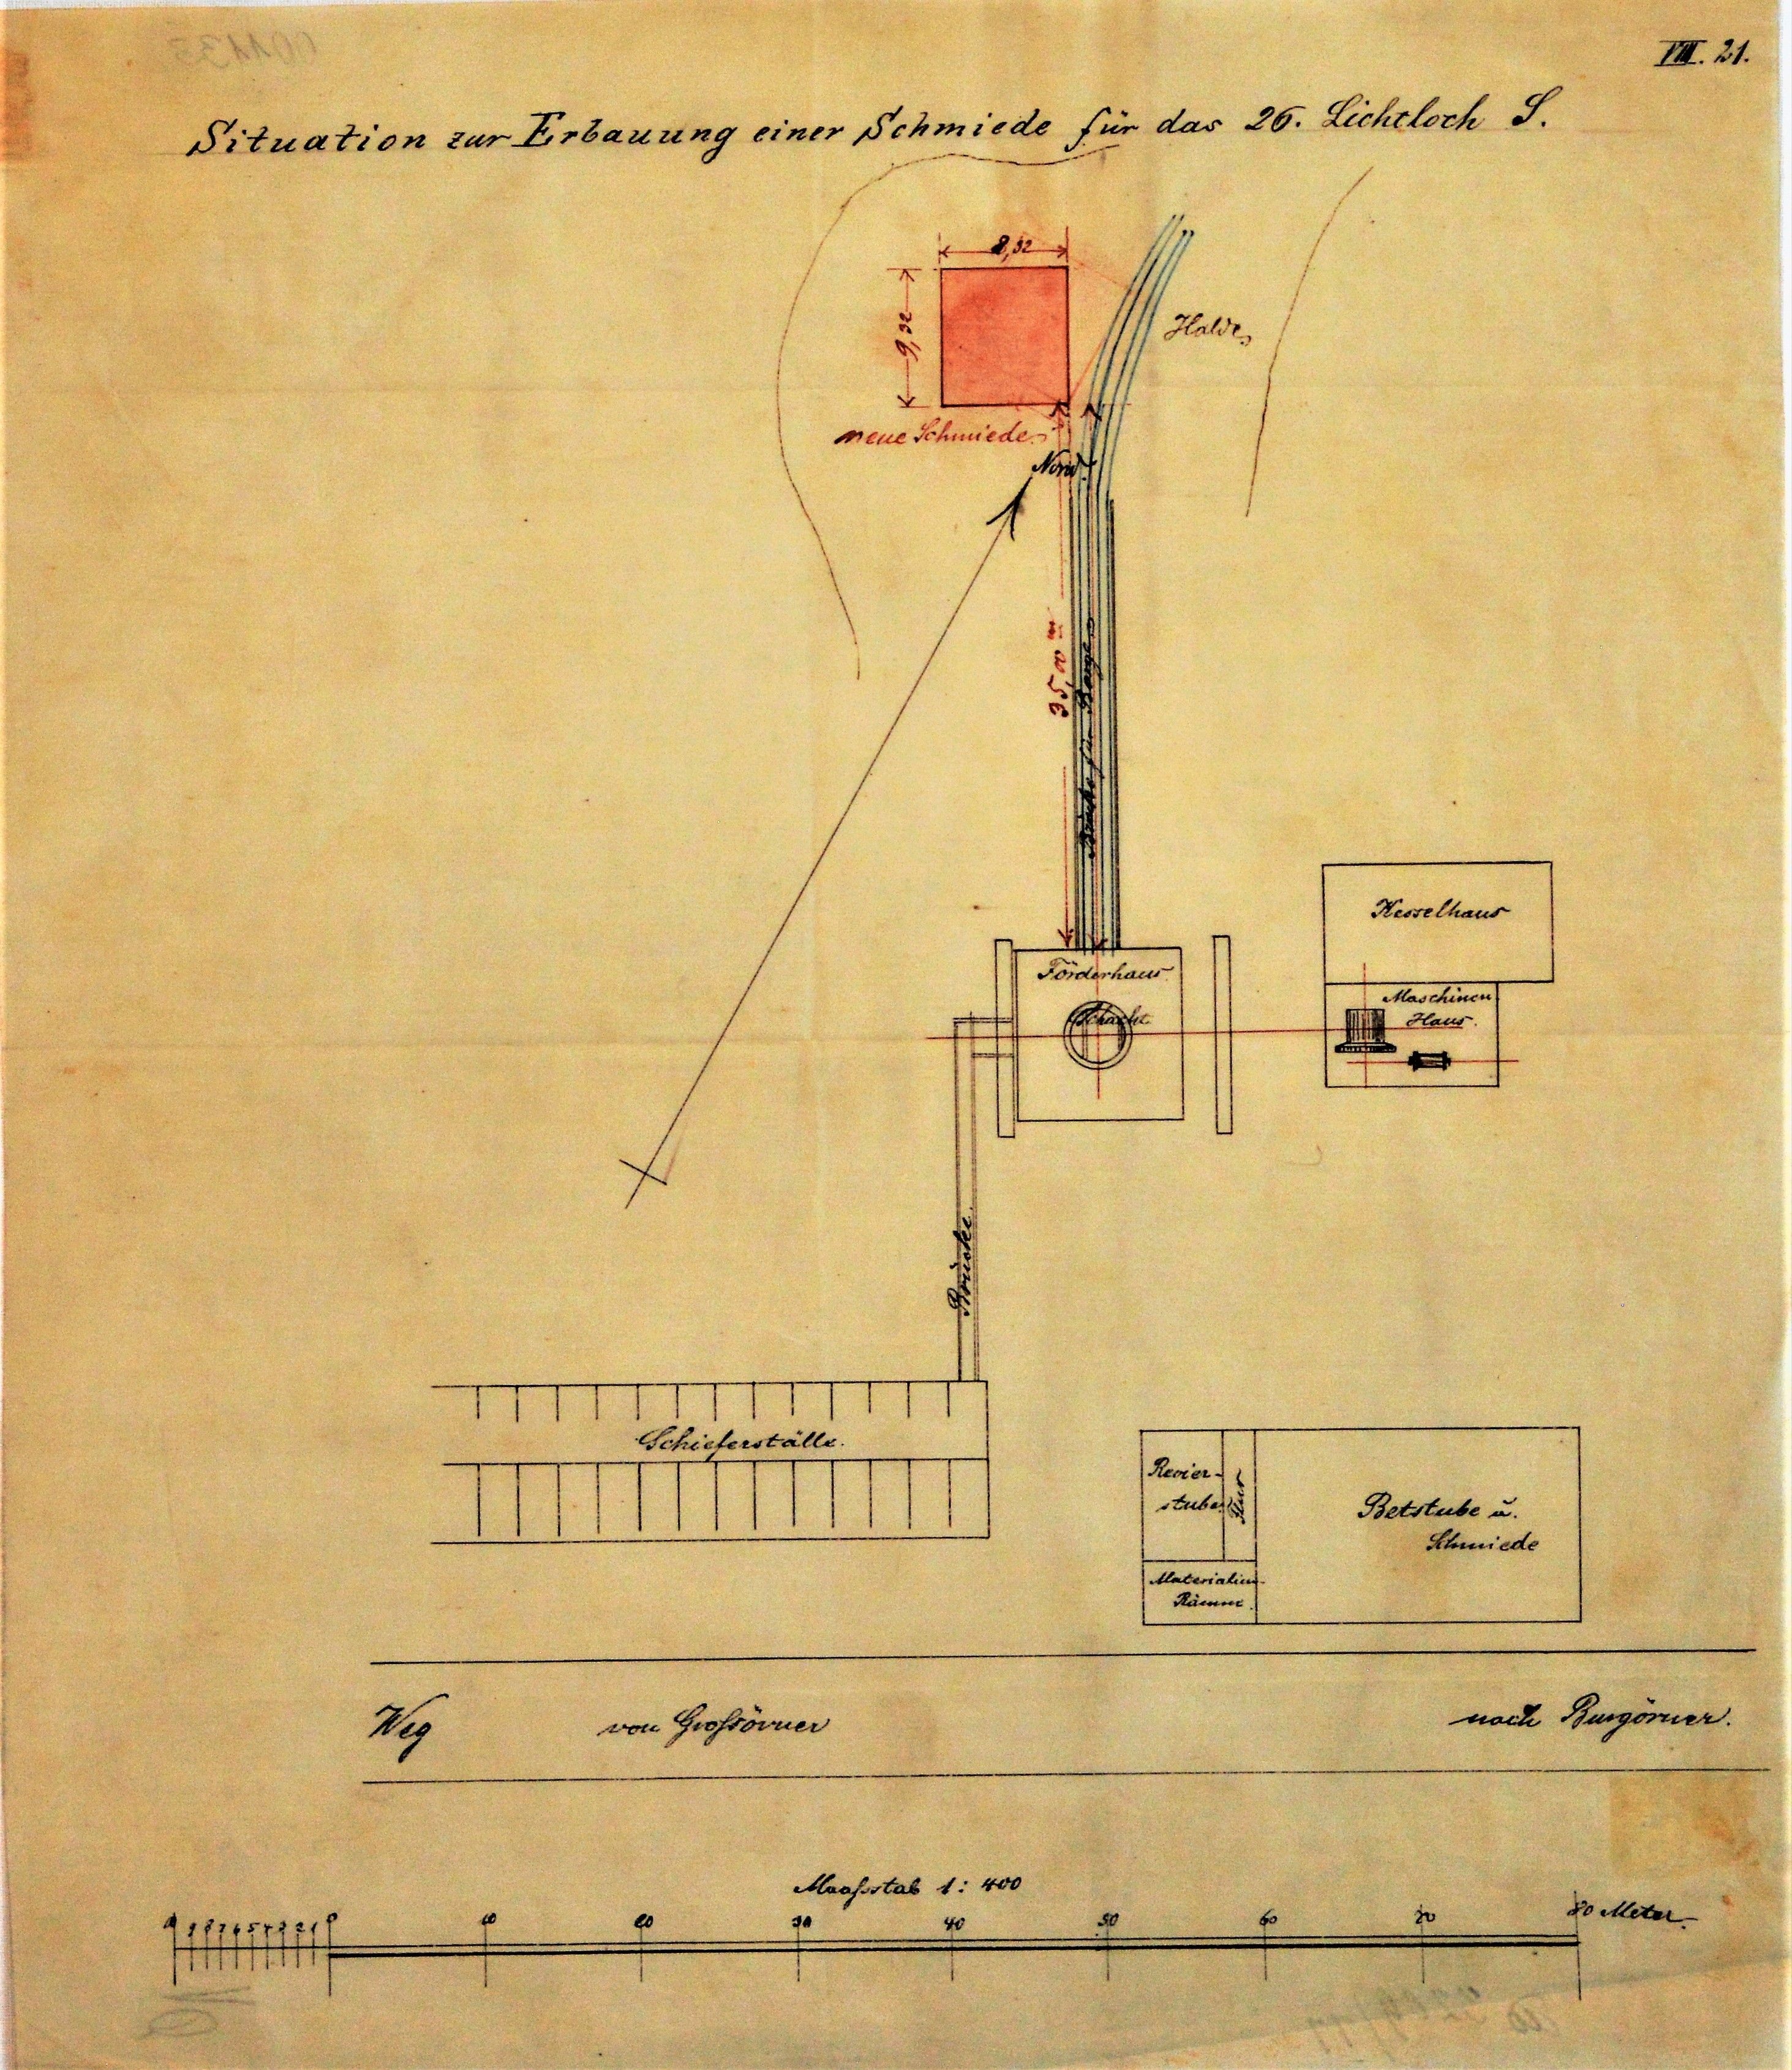 Situation zur Erbauung einer Schmiede für das 26. Lichtloch S (Mansfeld-Museum im Humboldt-Schloss CC BY-NC-SA)